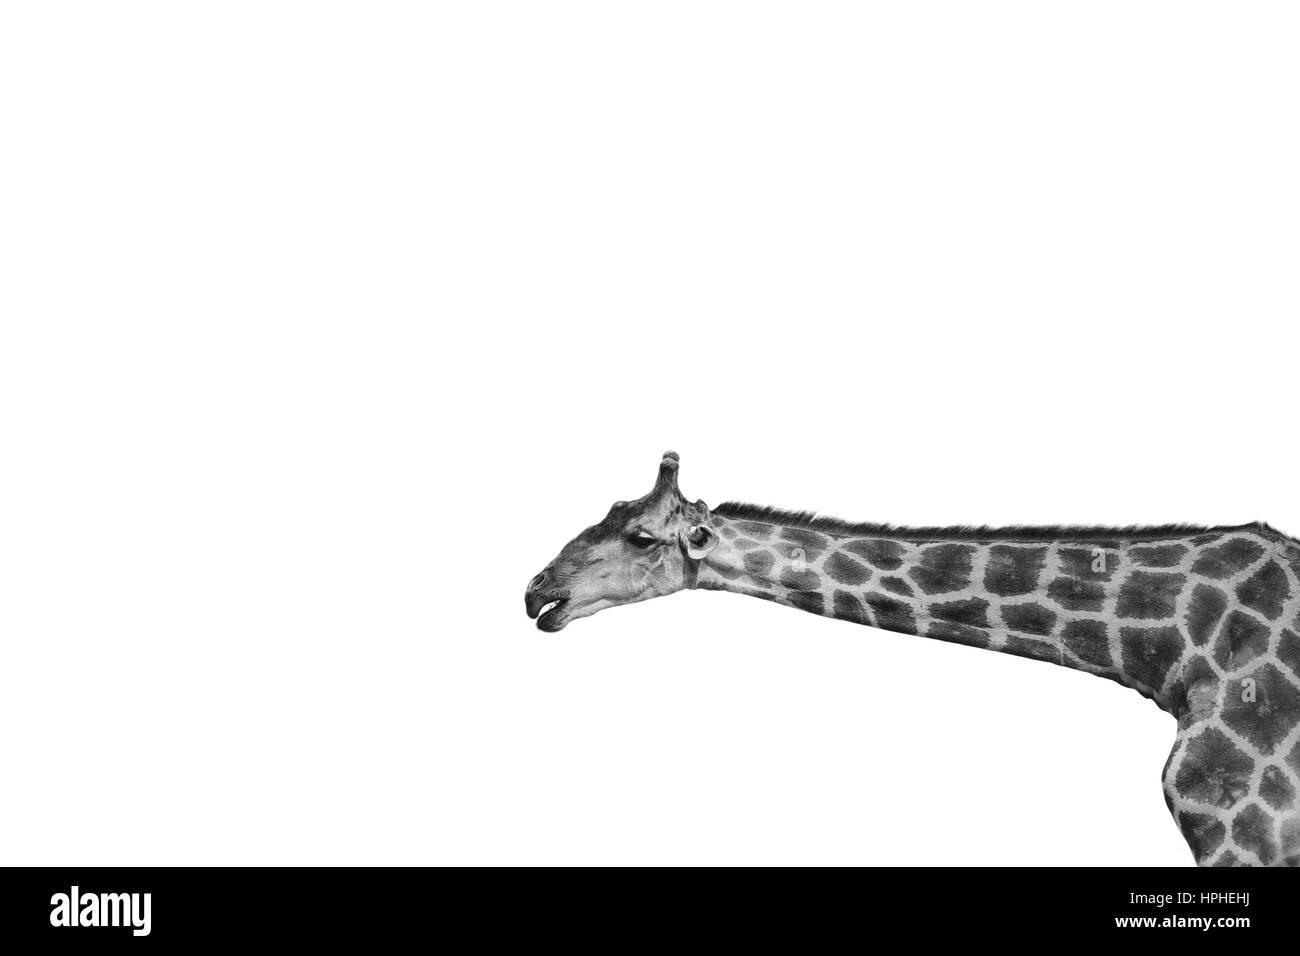 La giraffa ritratto su sfondo bianco in bianco e nero Foto Stock